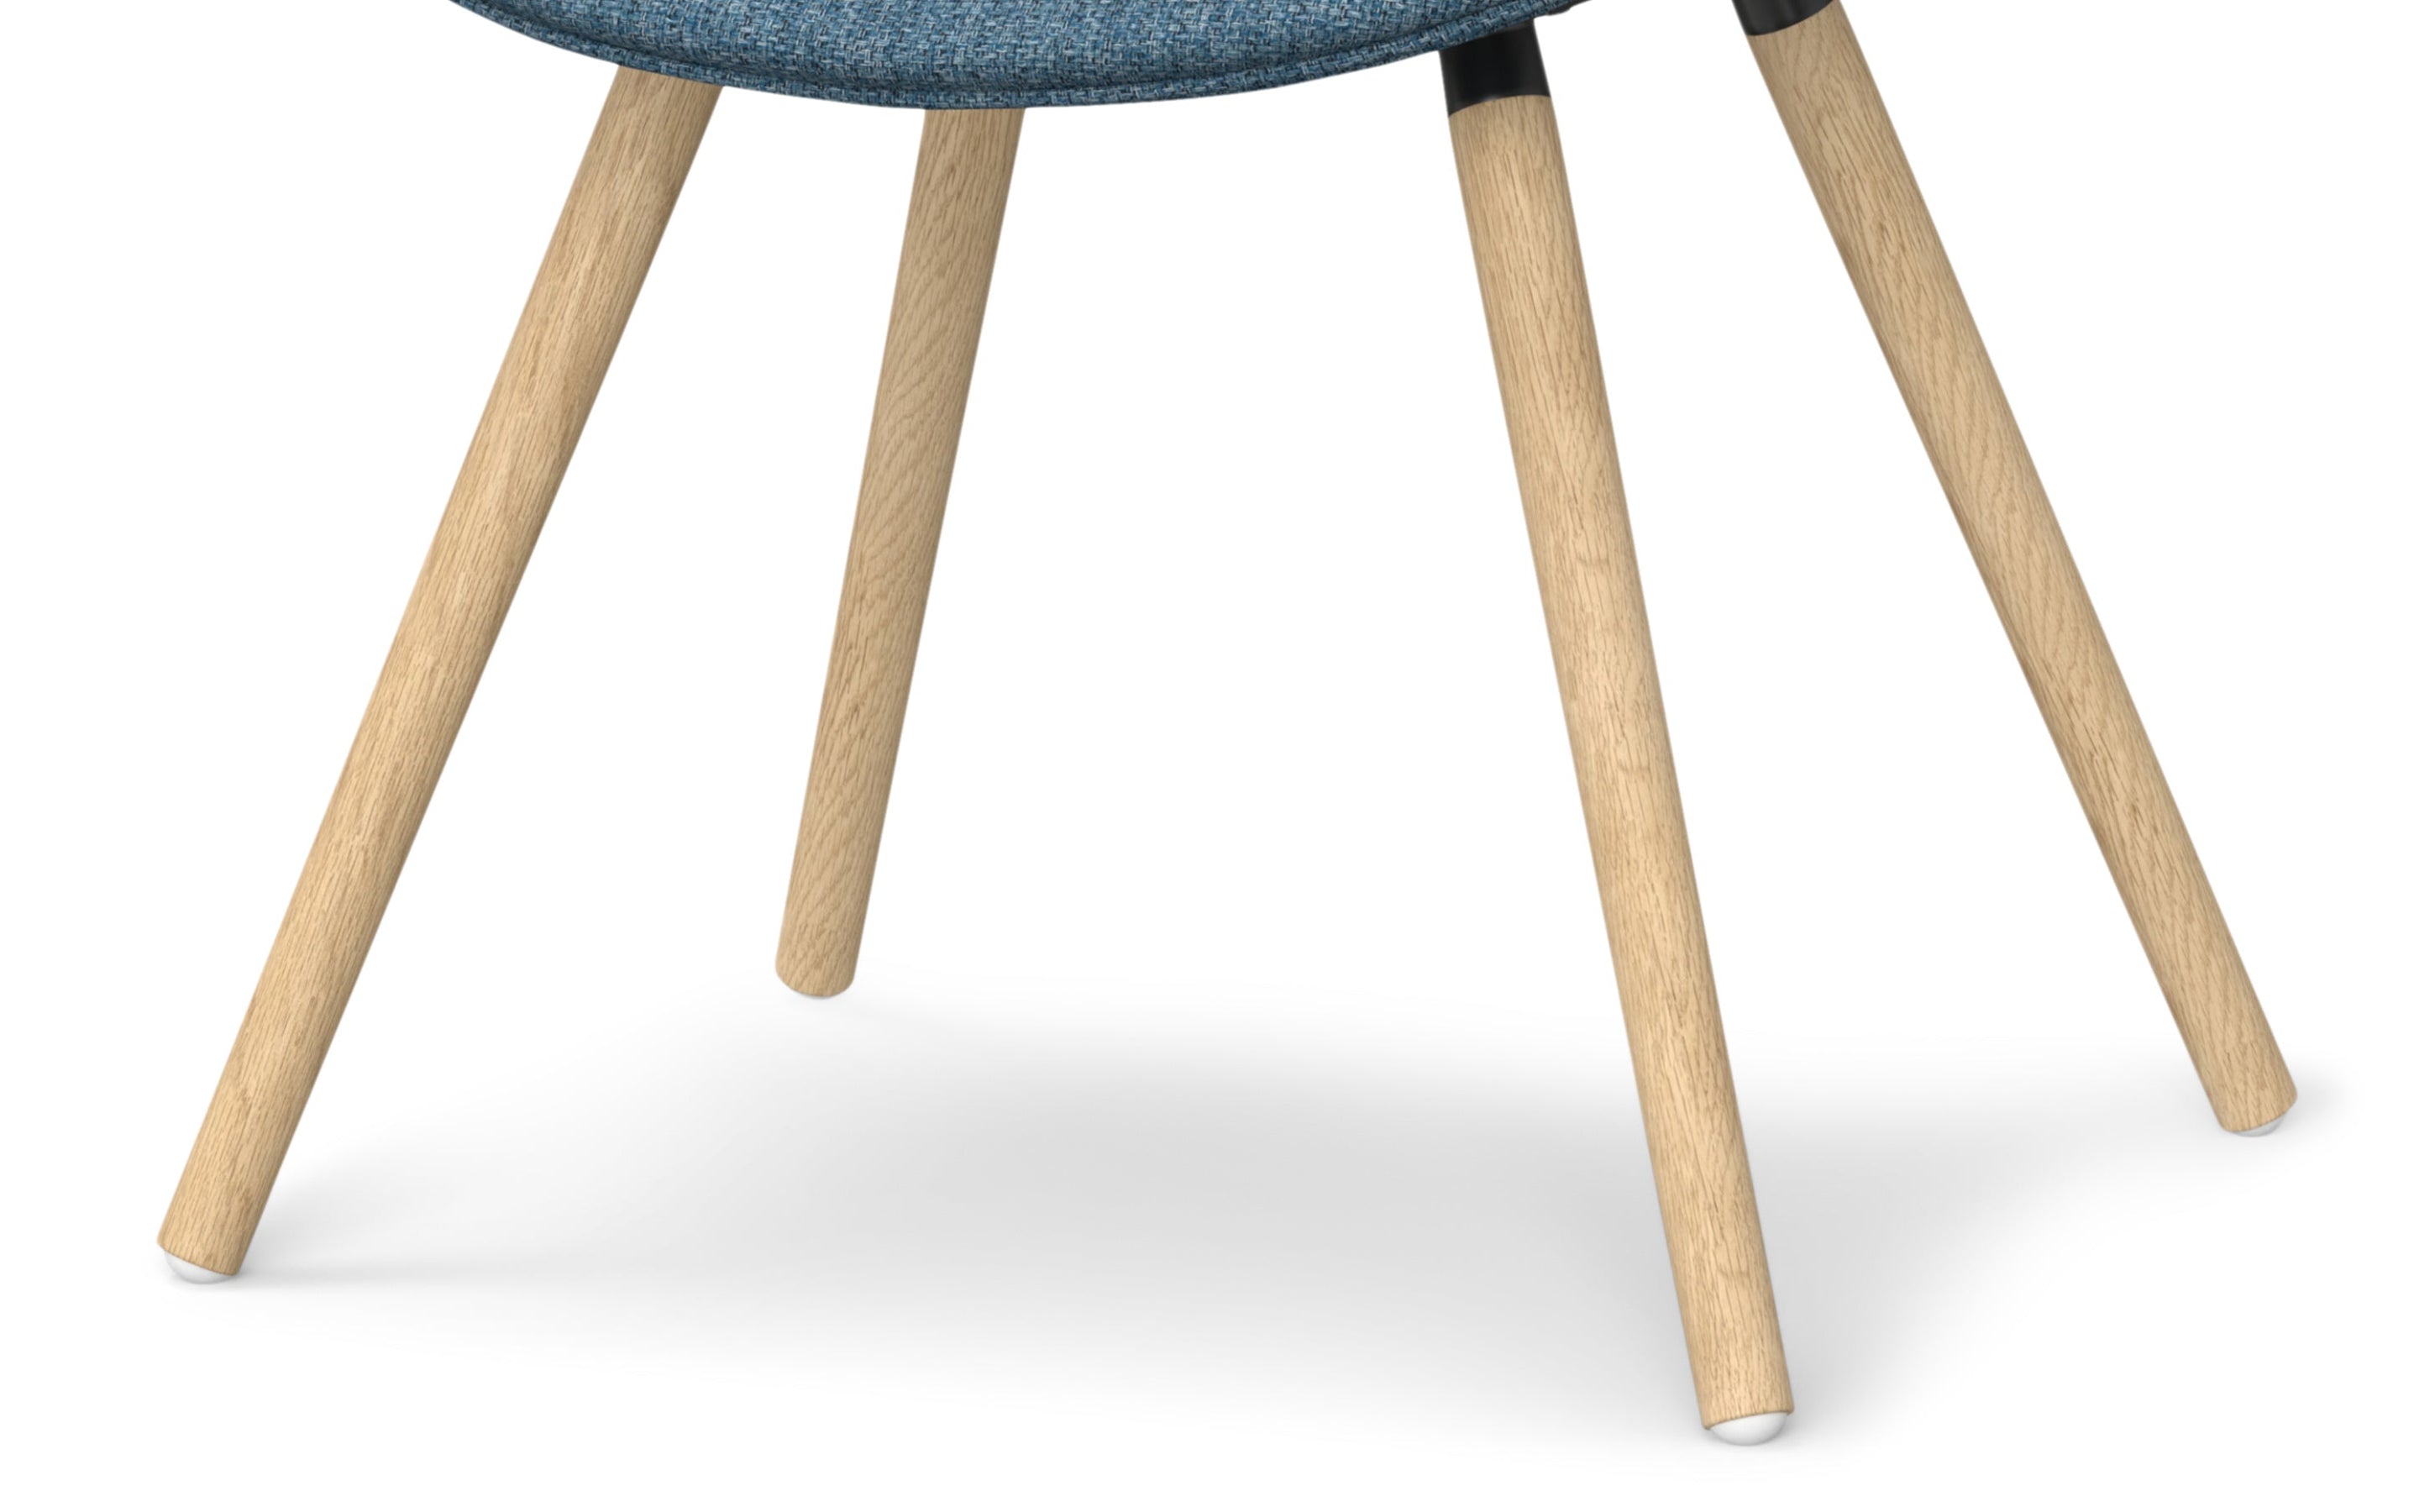 Denim Blue Light Wood | Malden Bentwood Dining Chair